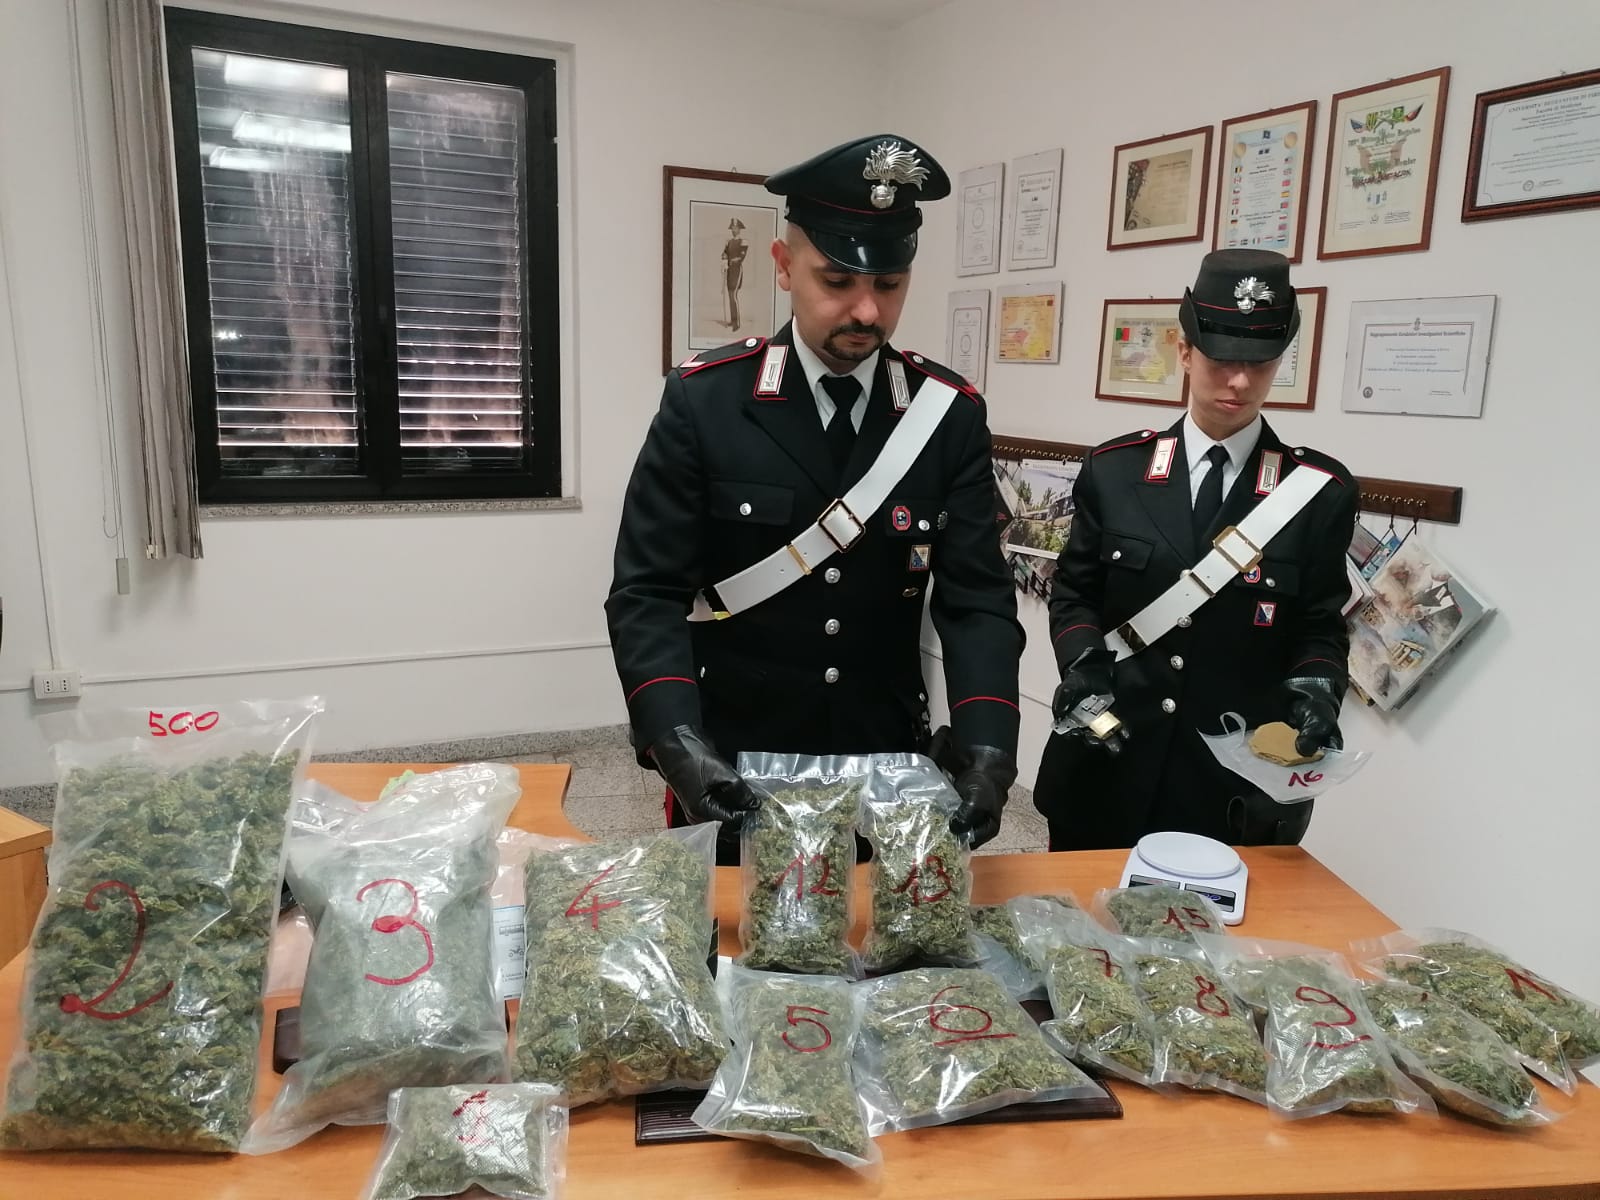 Coltivazione domestica di cannabis: cinque arresti